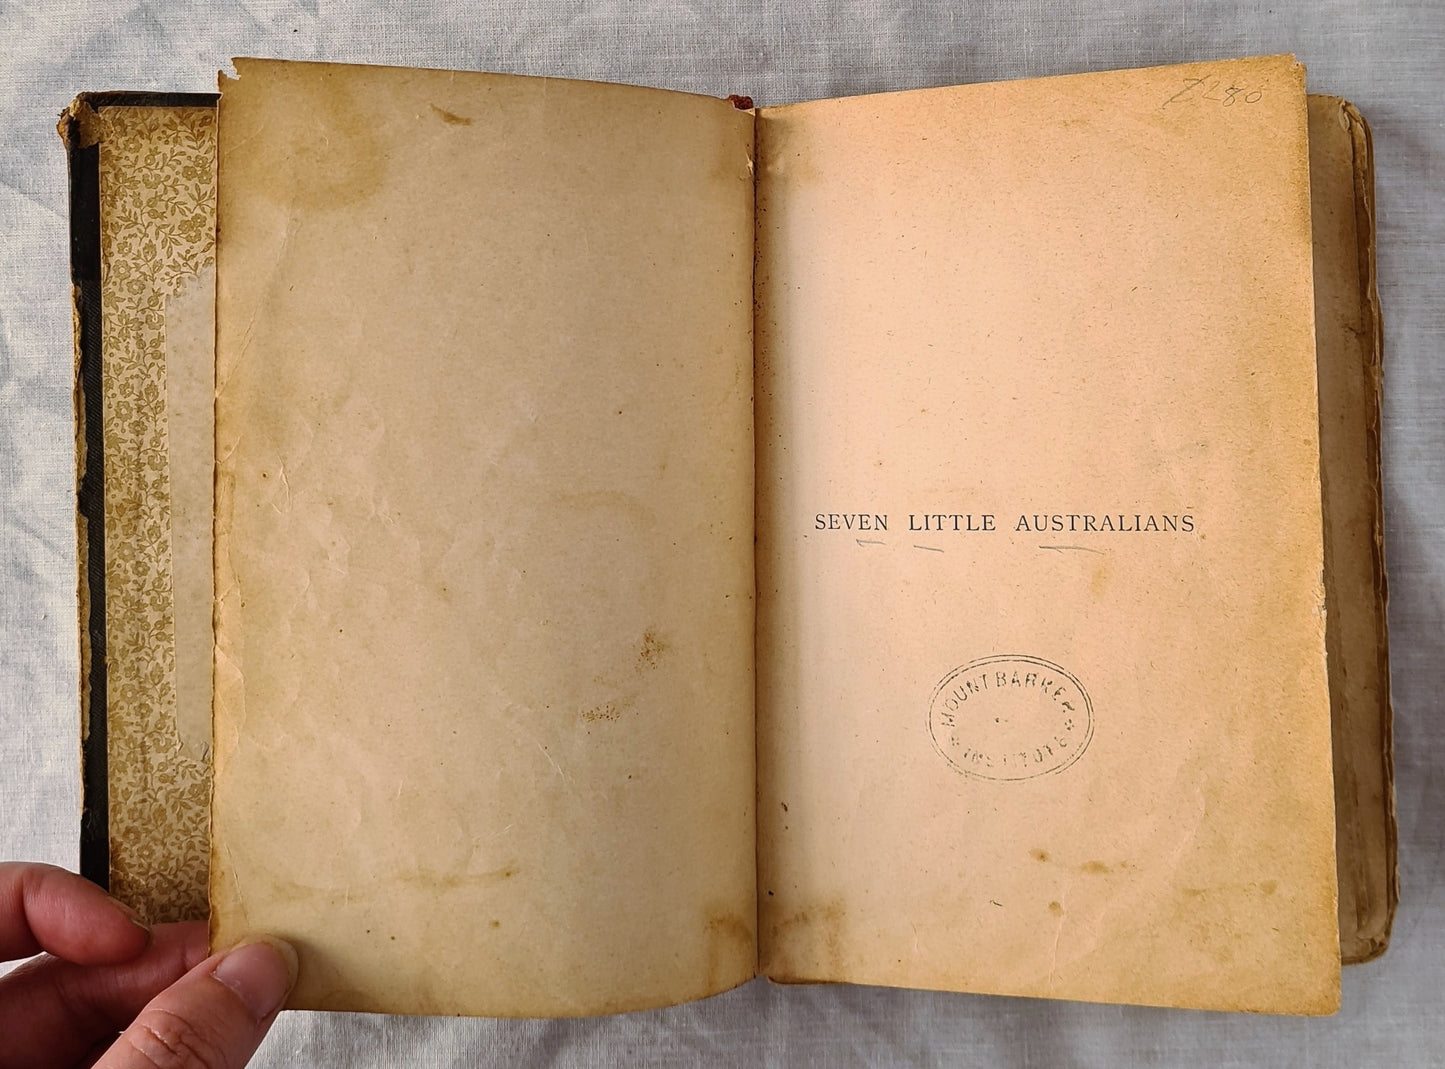 Seven Little Australians by Ethel S. Turner